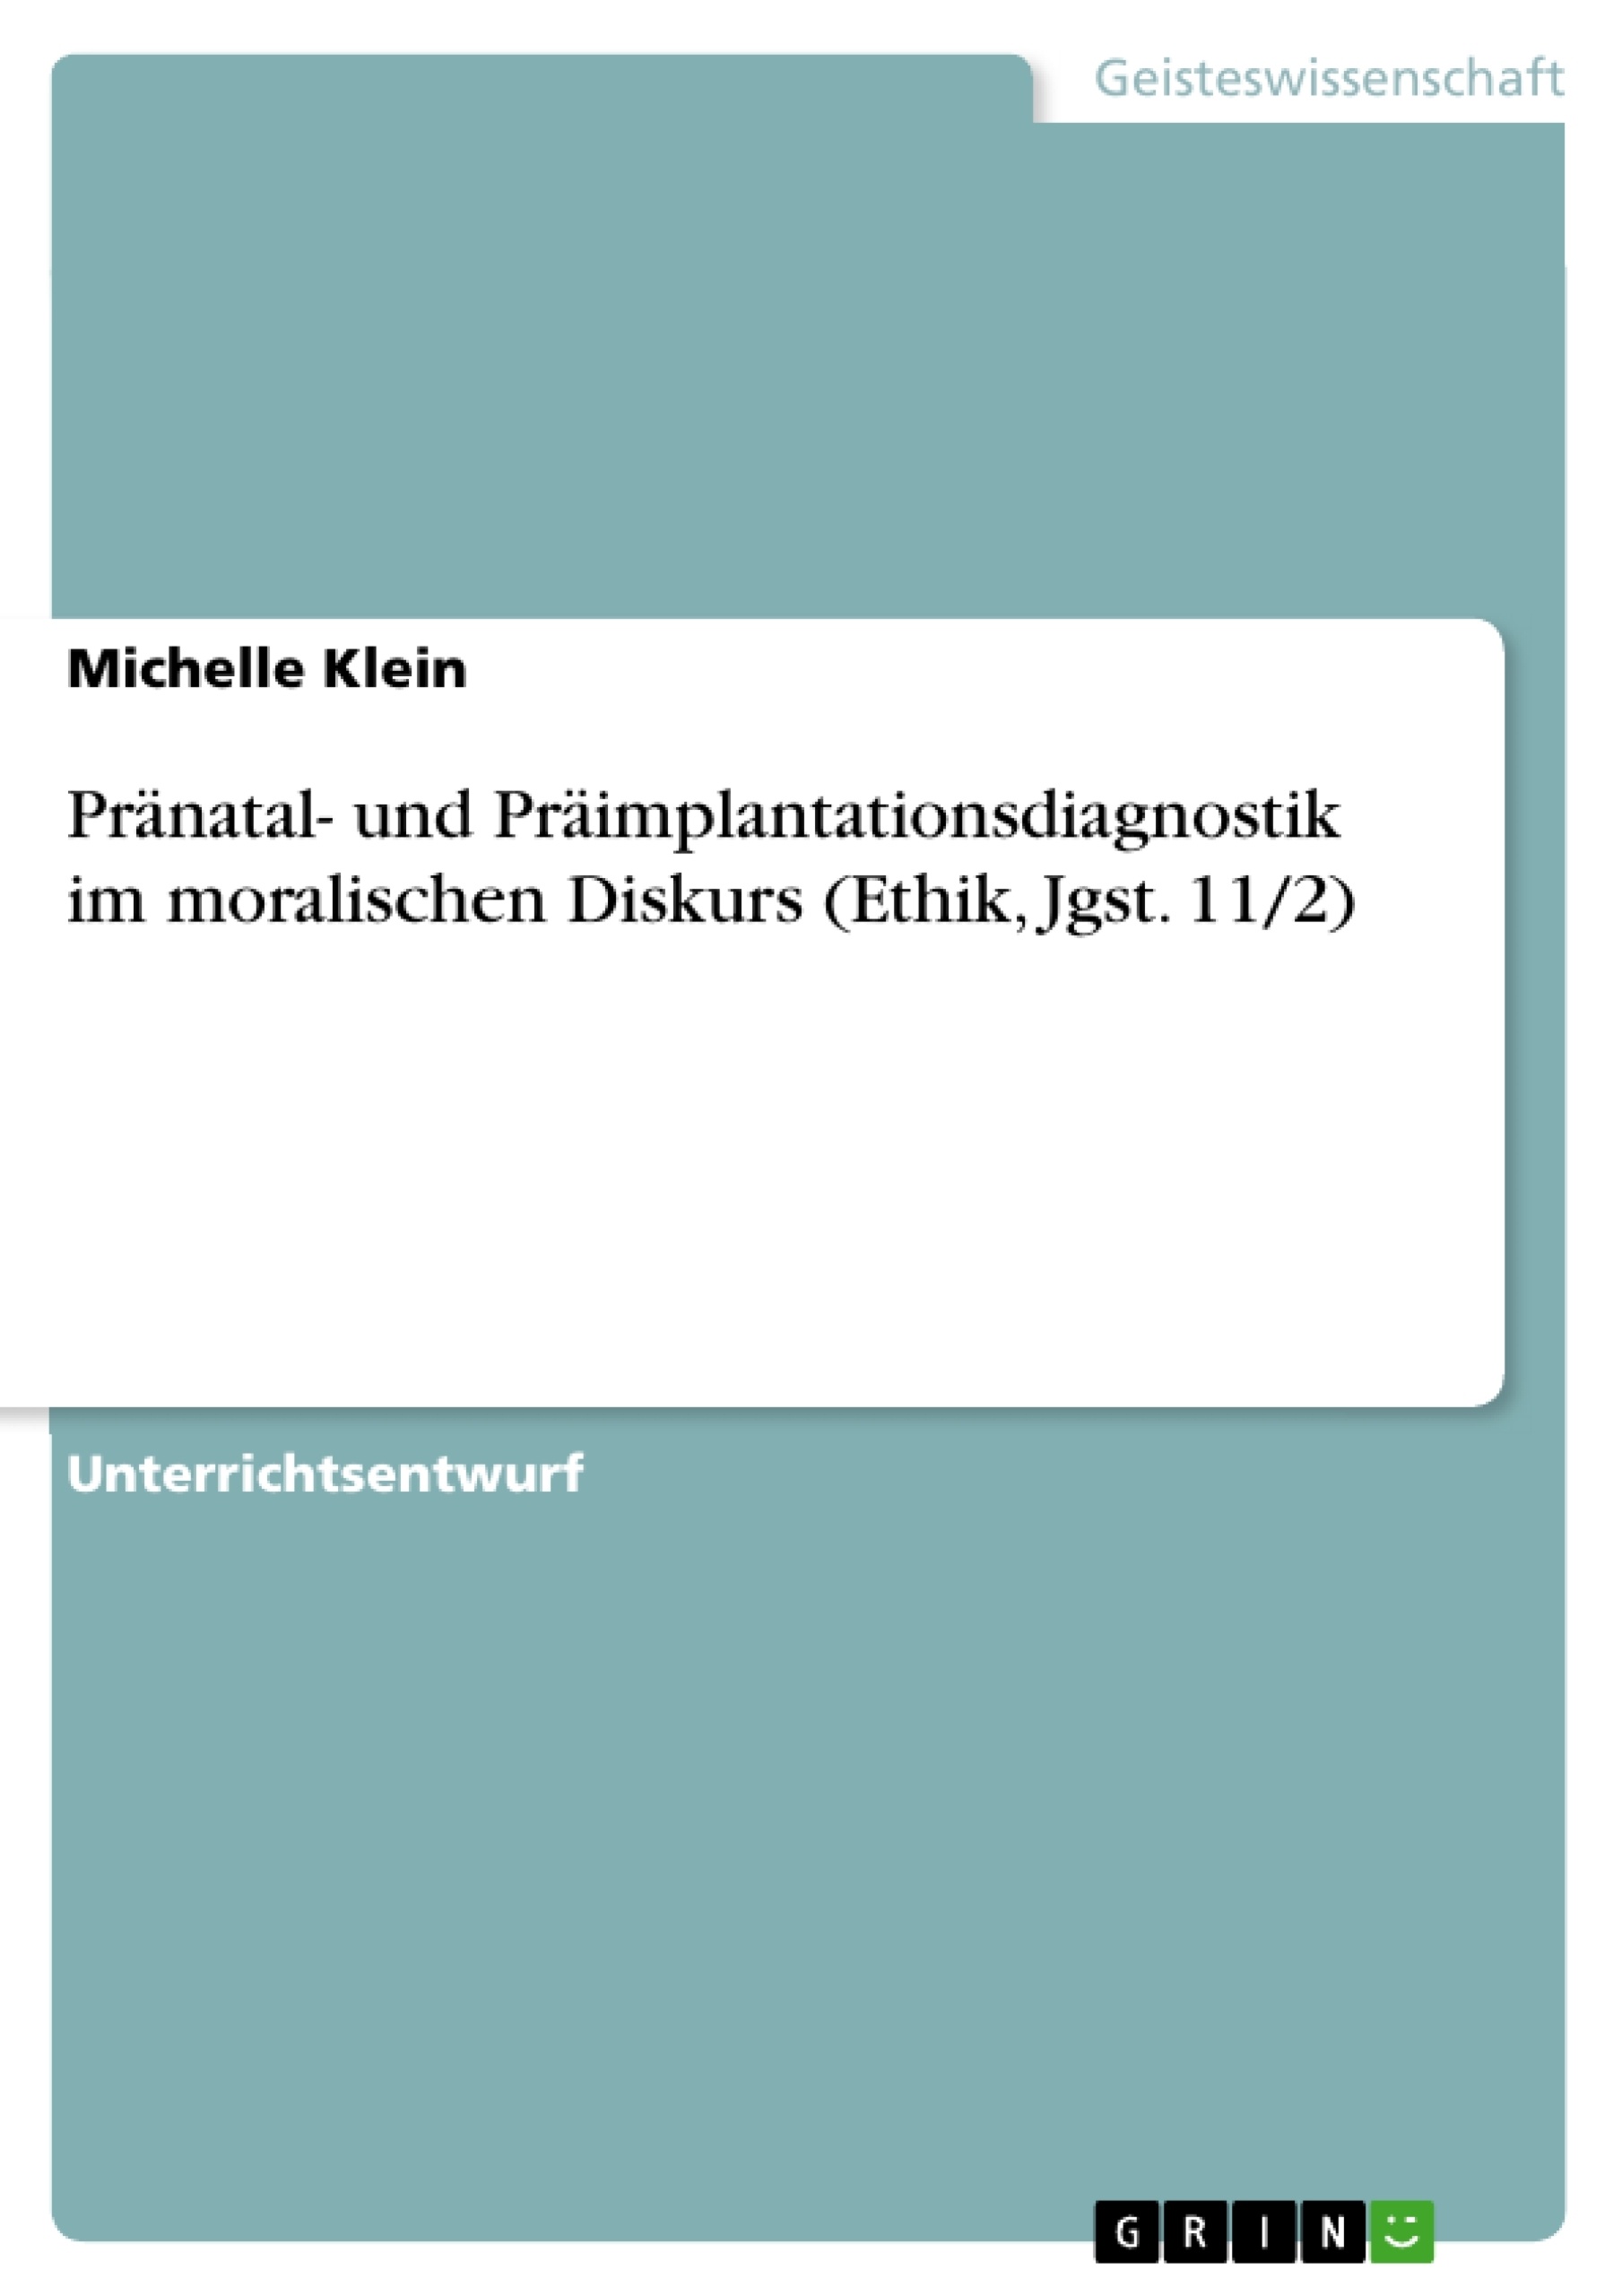 Título: Pränatal- und Präimplantationsdiagnostik im moralischen Diskurs (Ethik, Jgst. 11/2)